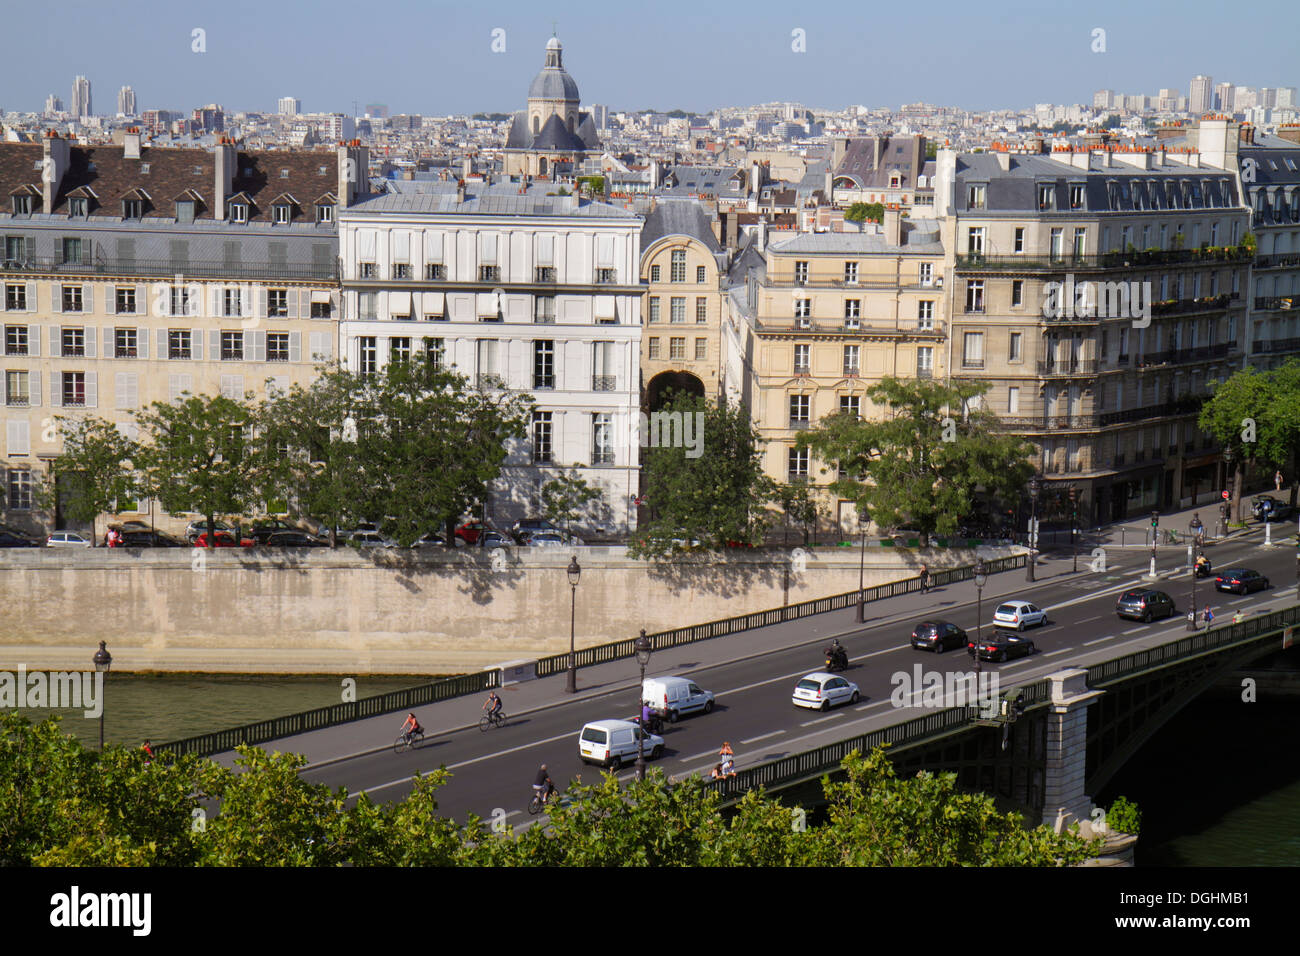 Paris France,5ème arrondissement,Institut du monde arabe,AWI,Institut du monde arabe,terrasse sur le toit,vue sur la ville,toits,Seine,pont,circulation Banque D'Images